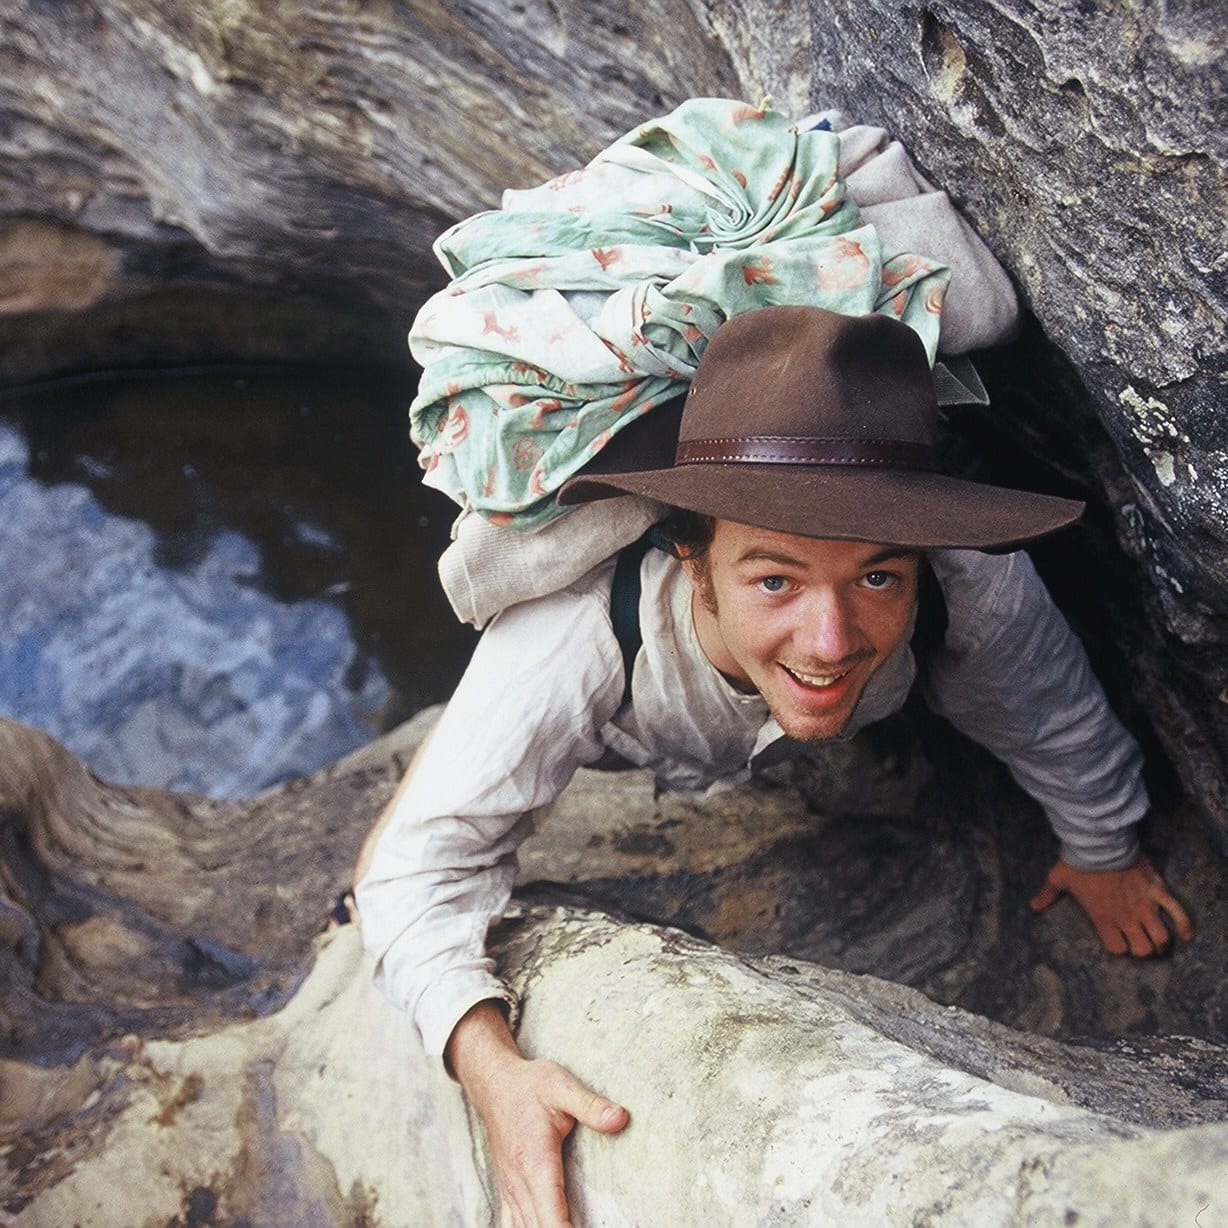 Survivalist climbs side of rocks 